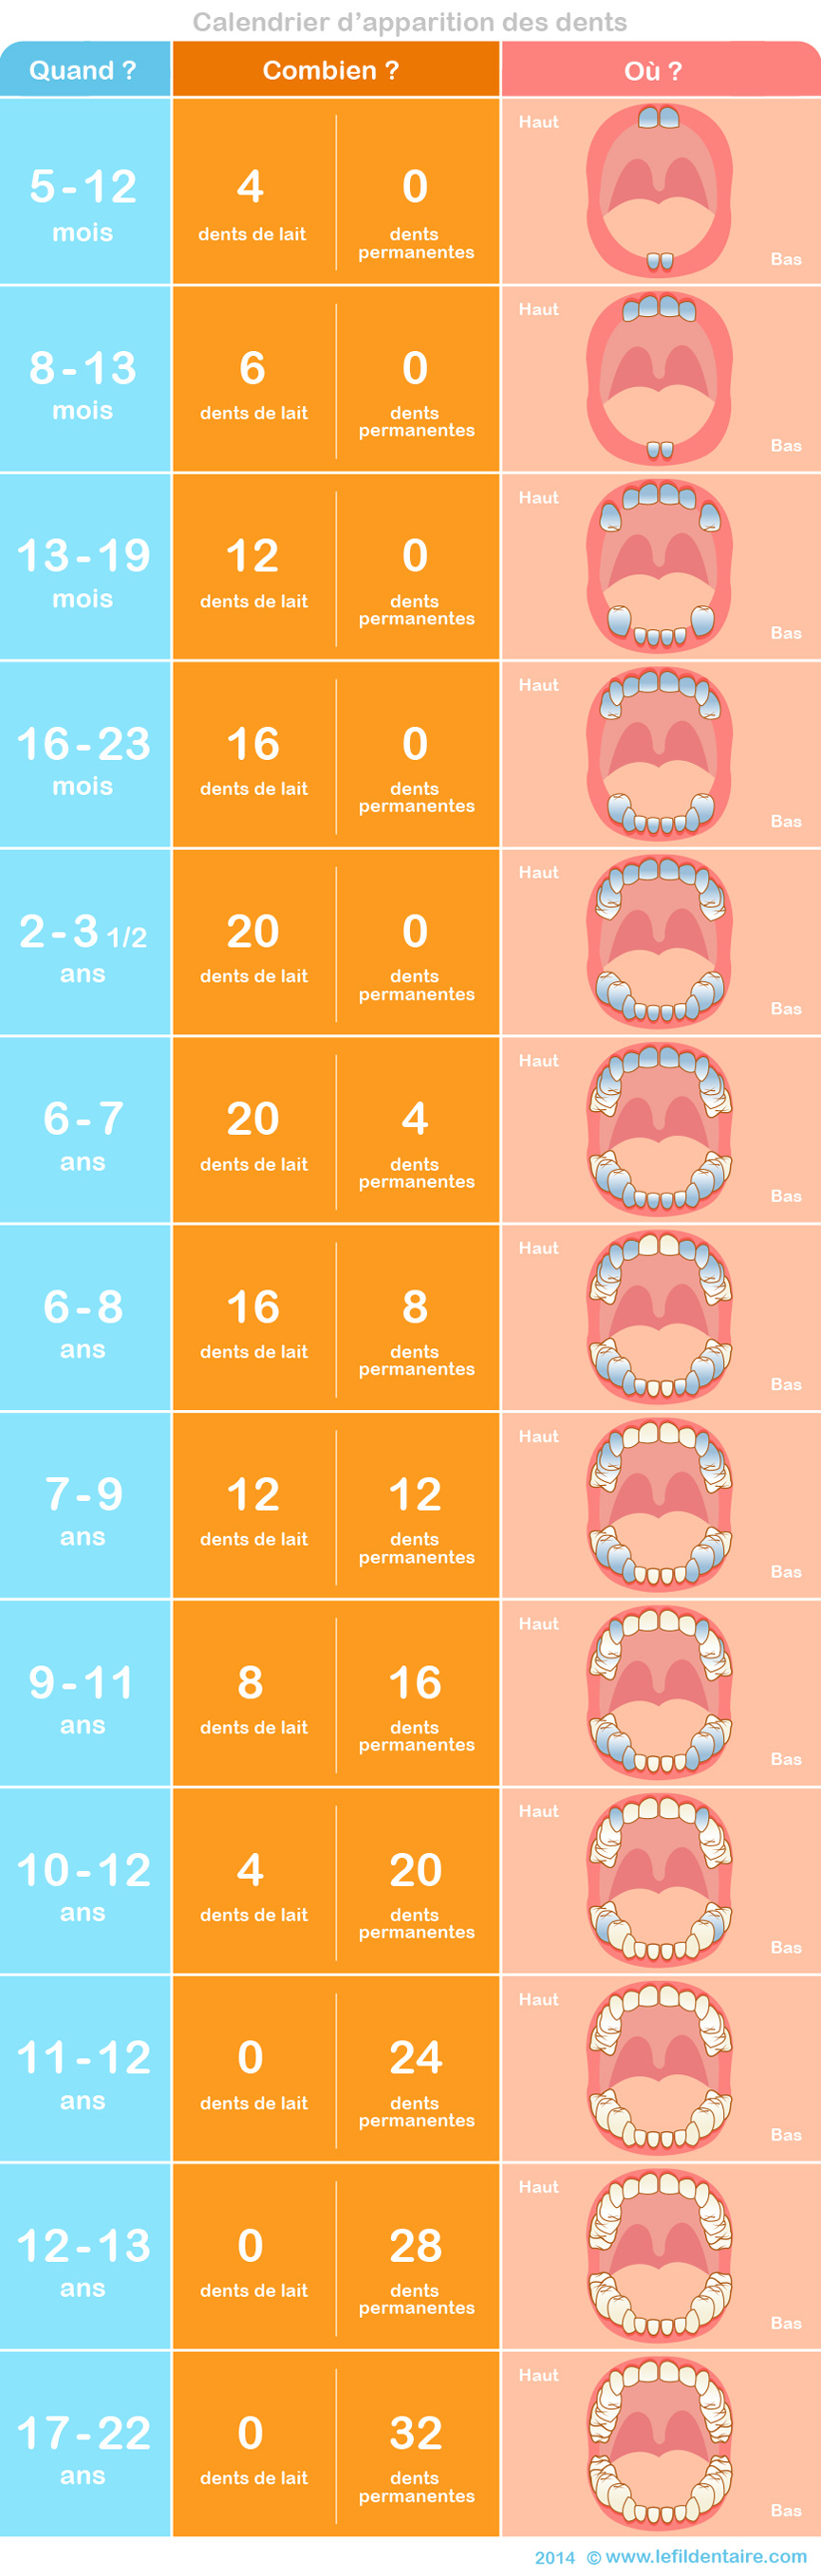 calendrier apparition dents lait et dents définitives